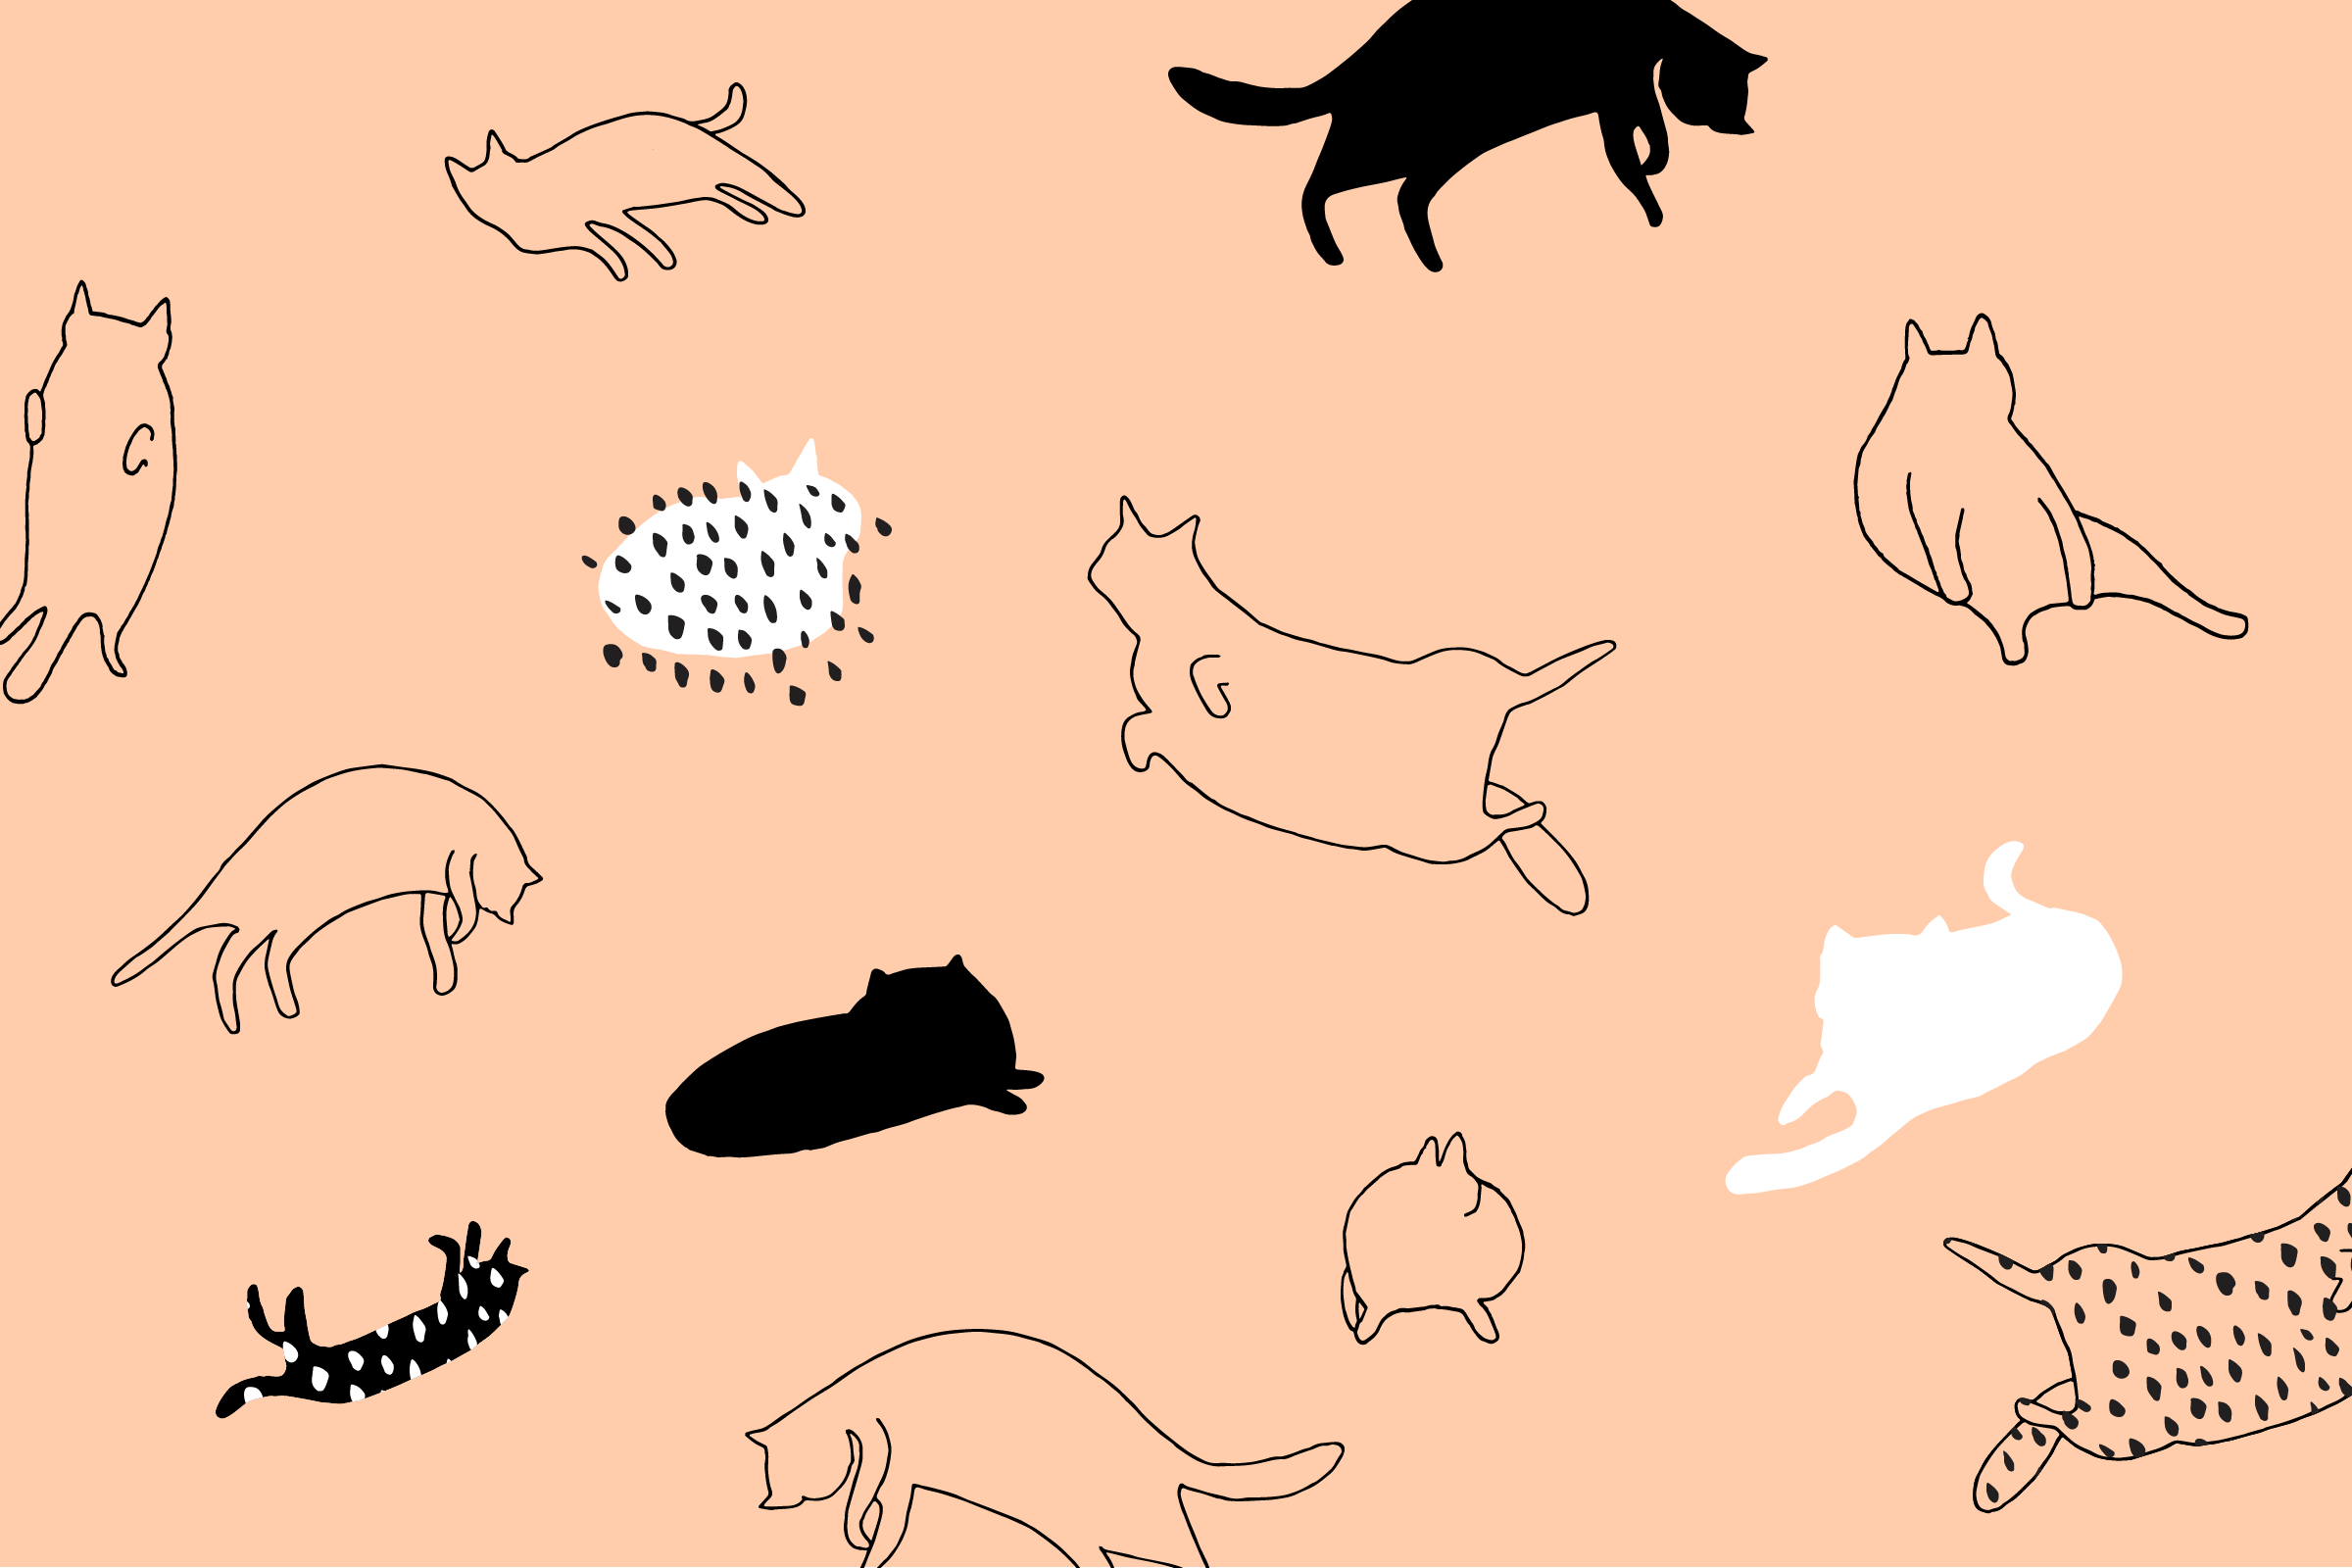 download free cartoon cat wallpapers desktop wallpaper cats 478452 hd wallpaper backgrounds download download free cartoon cat wallpapers